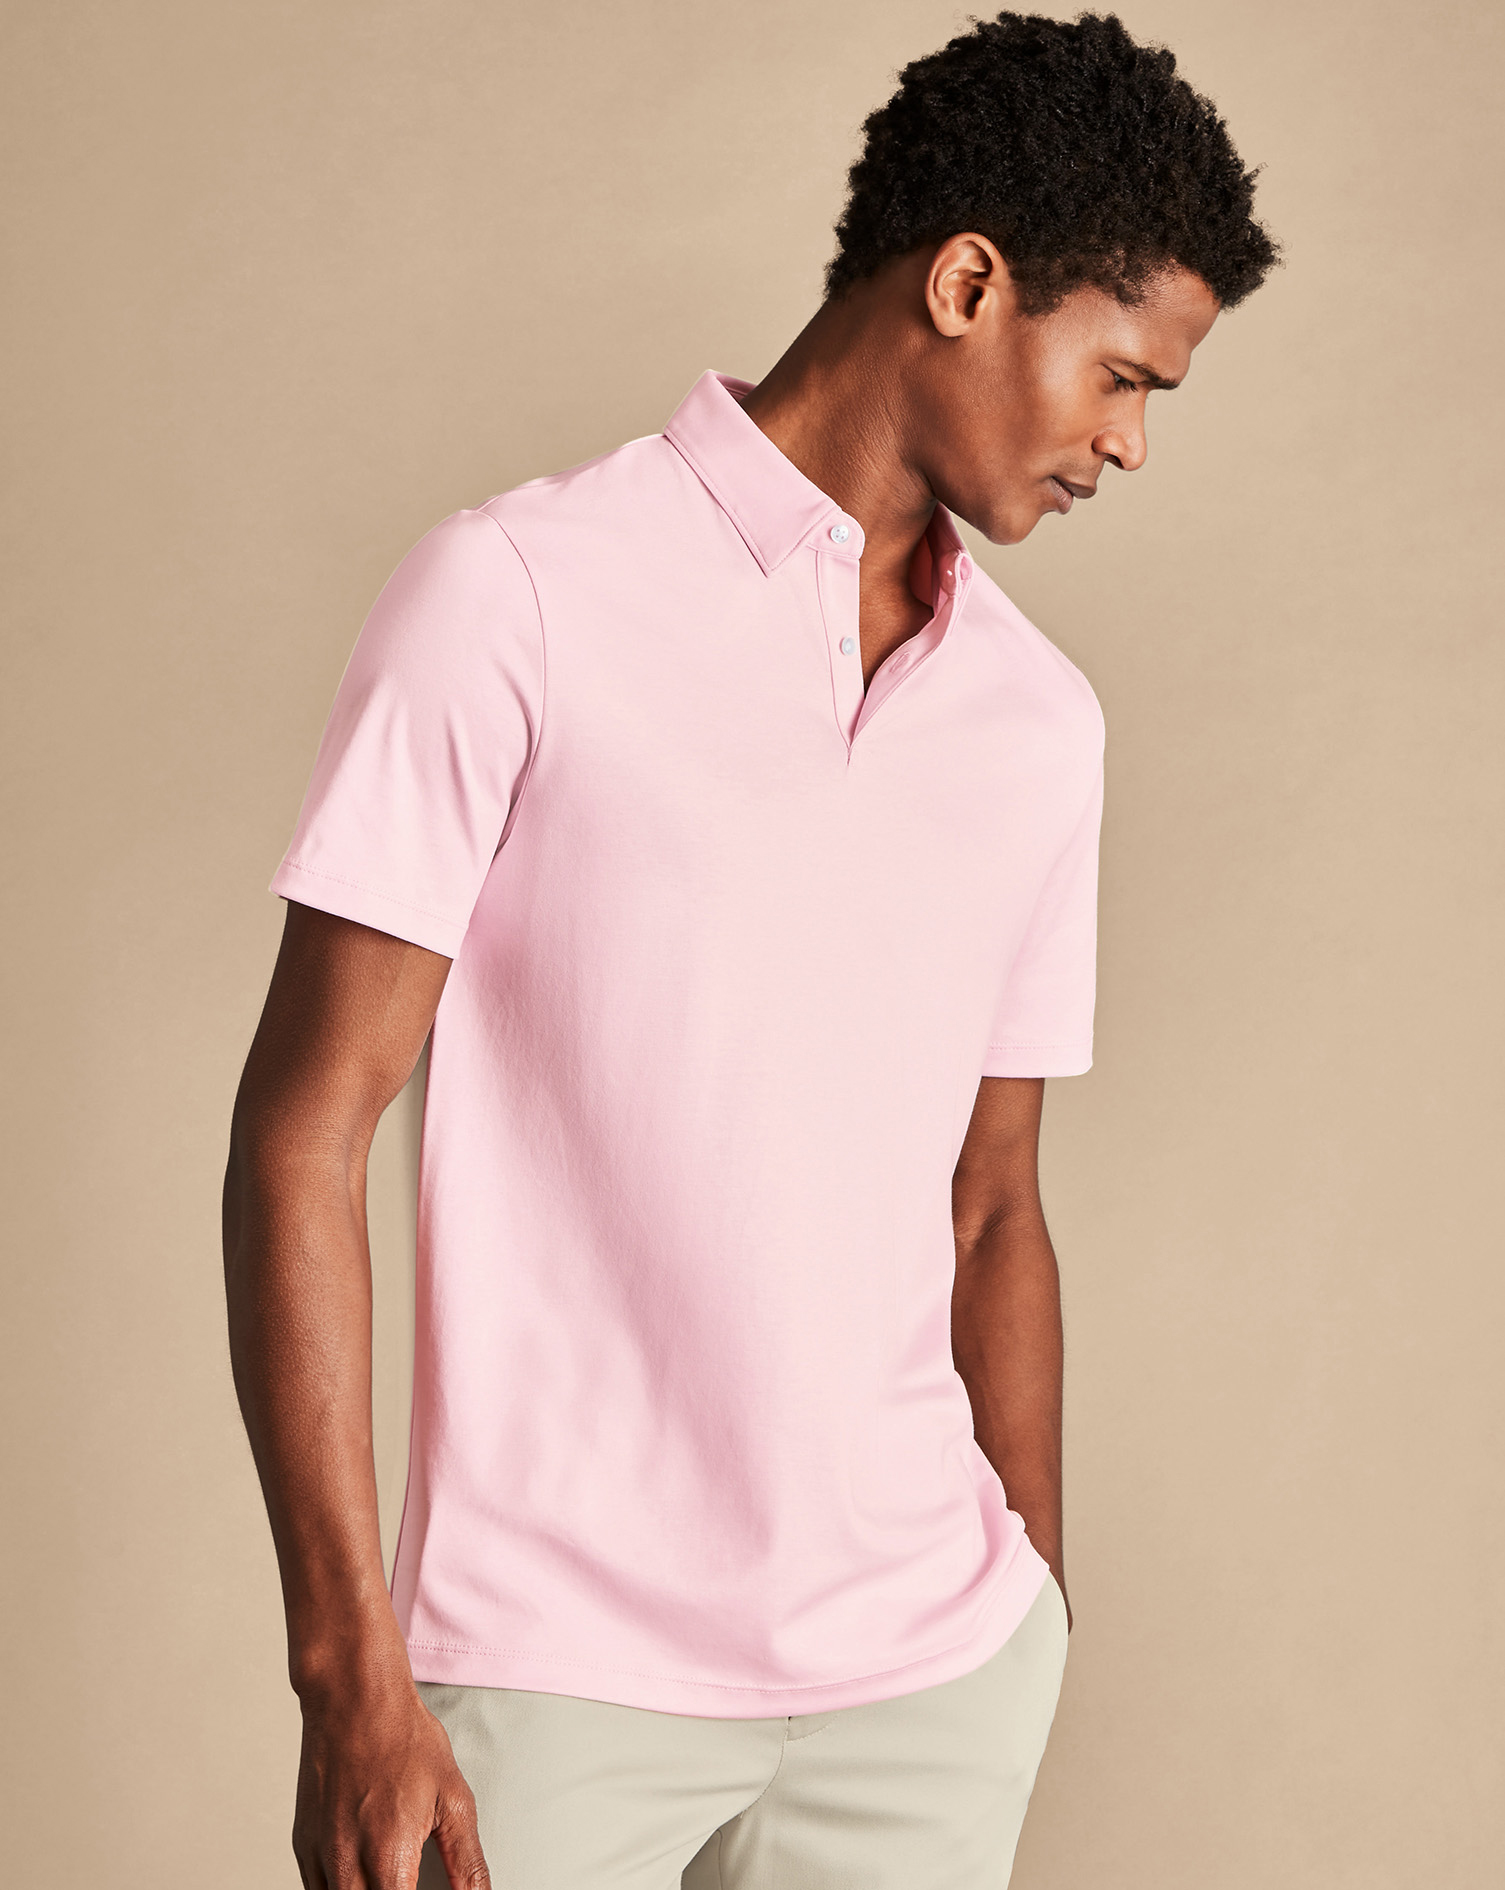 Men's Charles Tyrwhitt Smart Jersey Polo Shirt - Light Pink Size Medium Cotton
